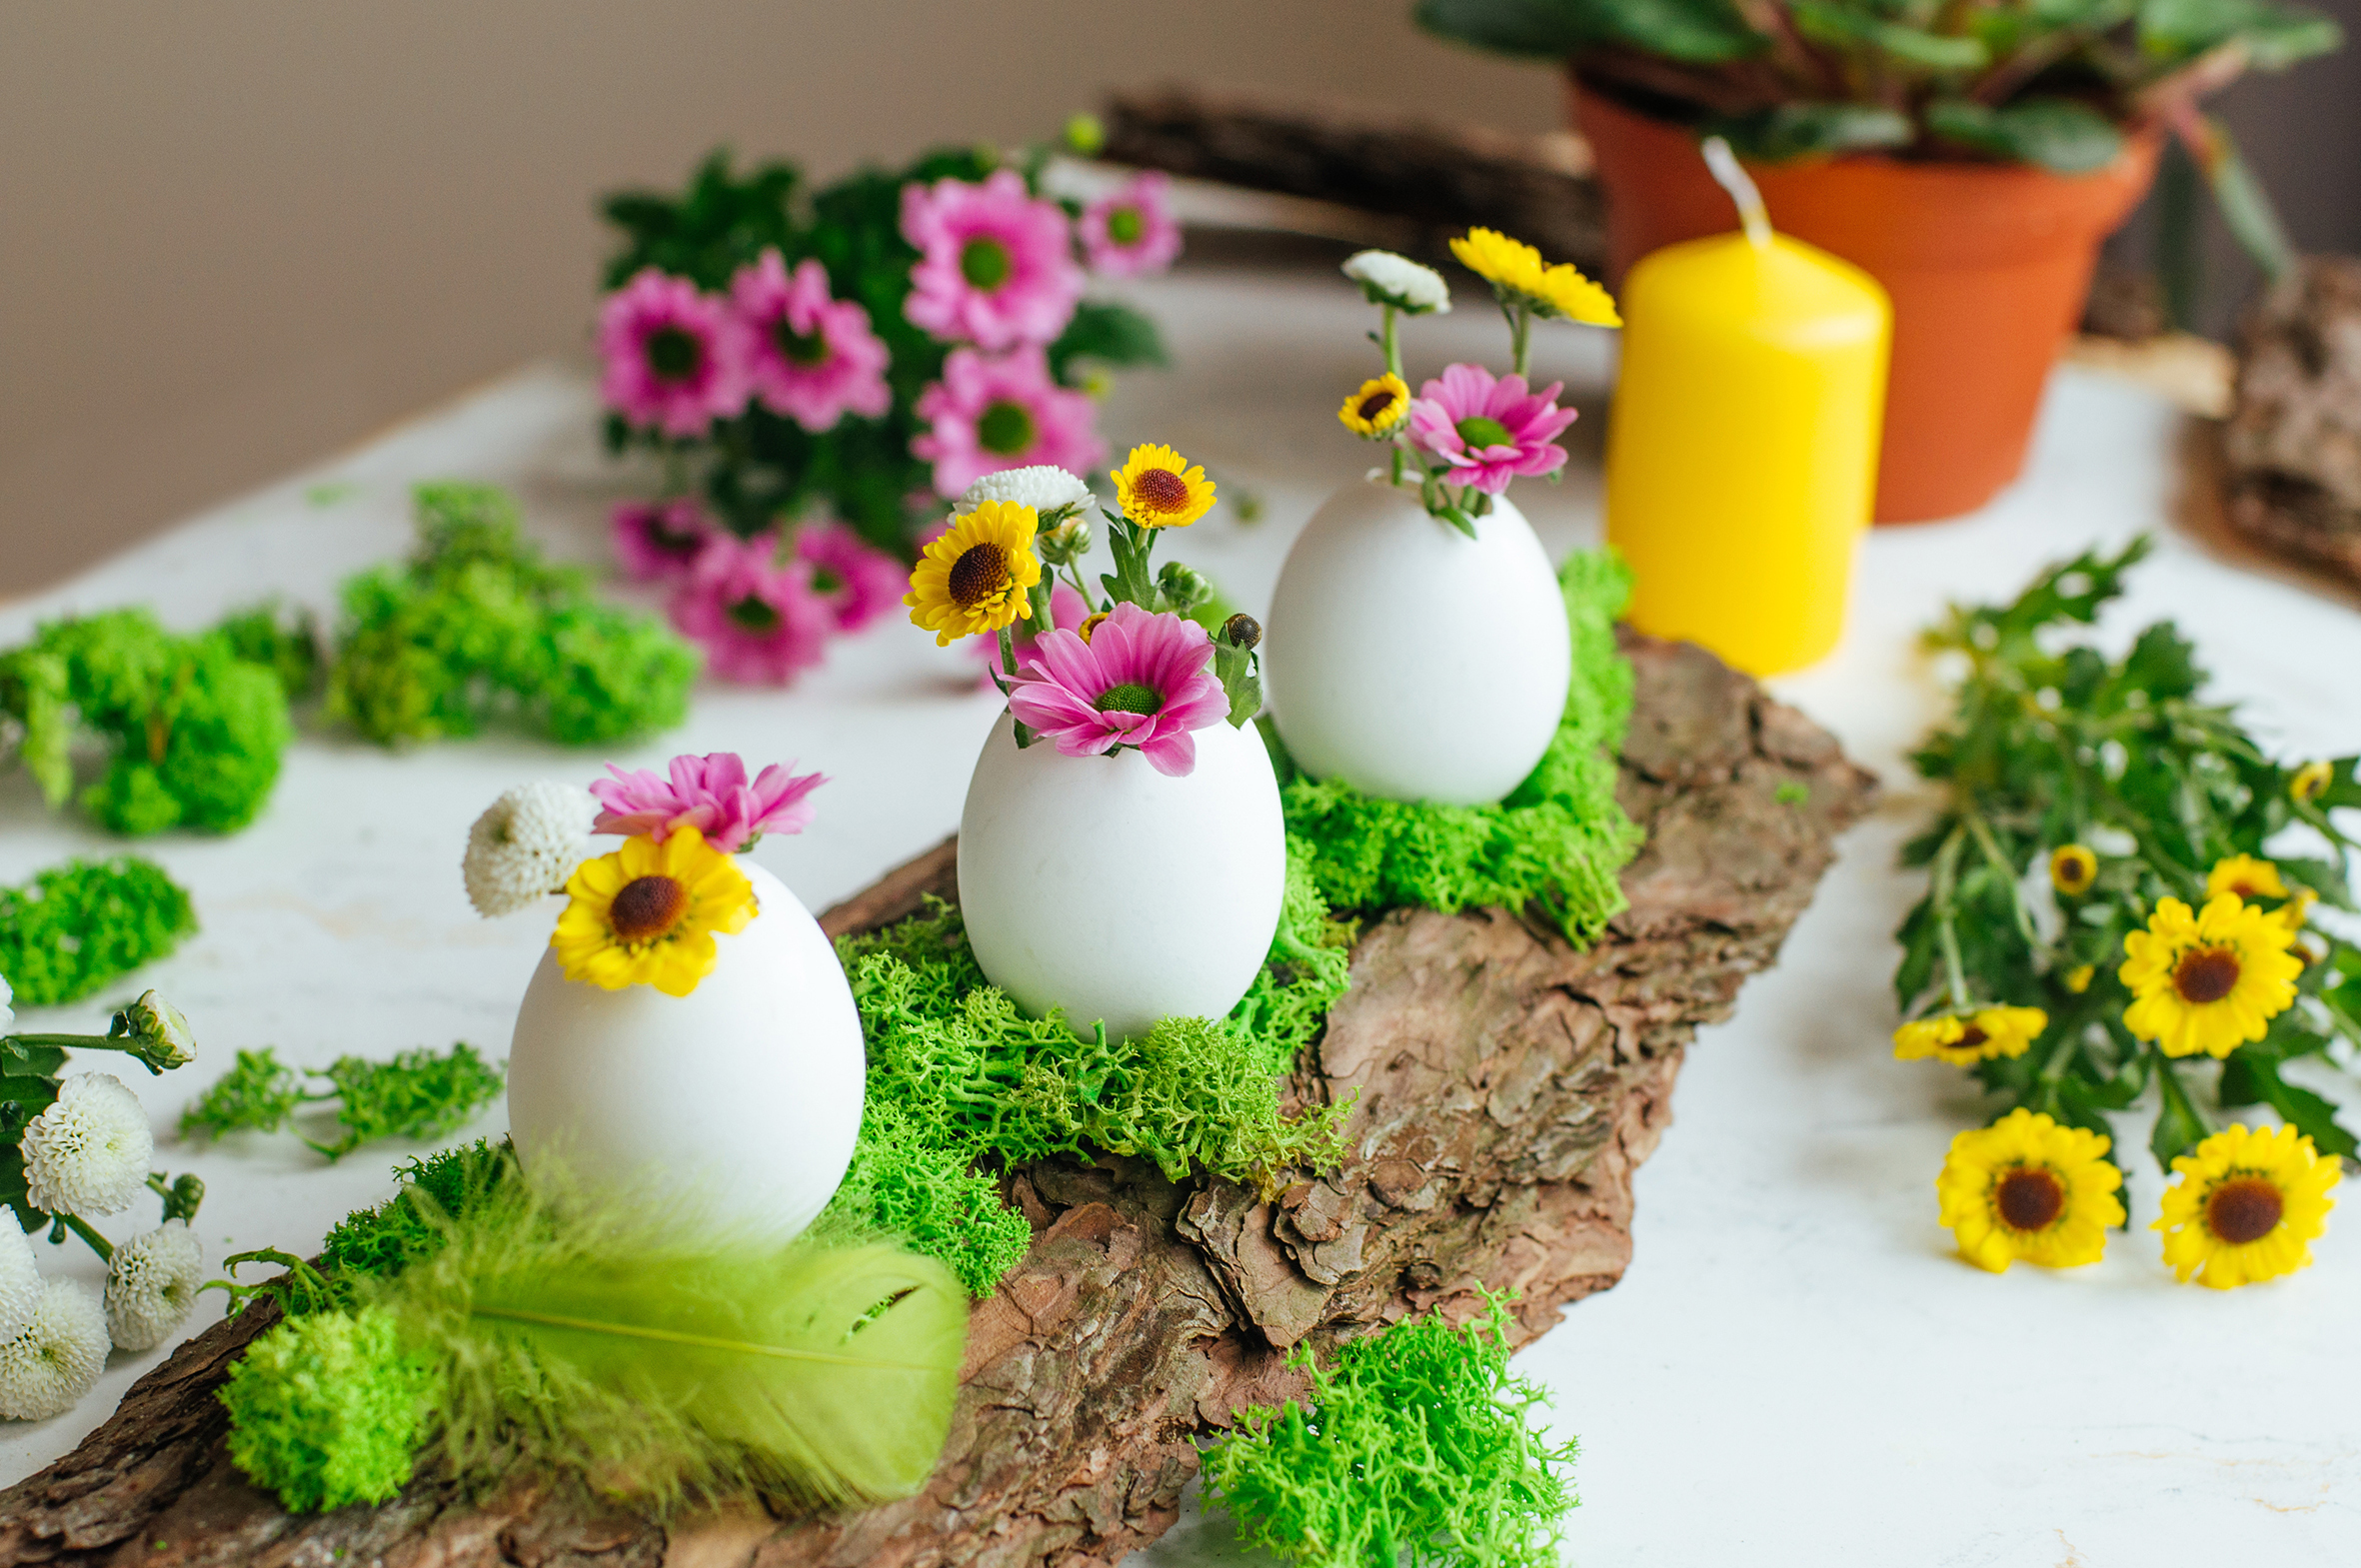 Noch eine Variante der Eierschalen als Blumenvase. Einfach etwas Moos auf eine Baumrinde kleben, darauf die leeren Eierschalen kleben und nach Belieben mit kleinen Blumen füllen - fertig ist der österliche Hingucker.